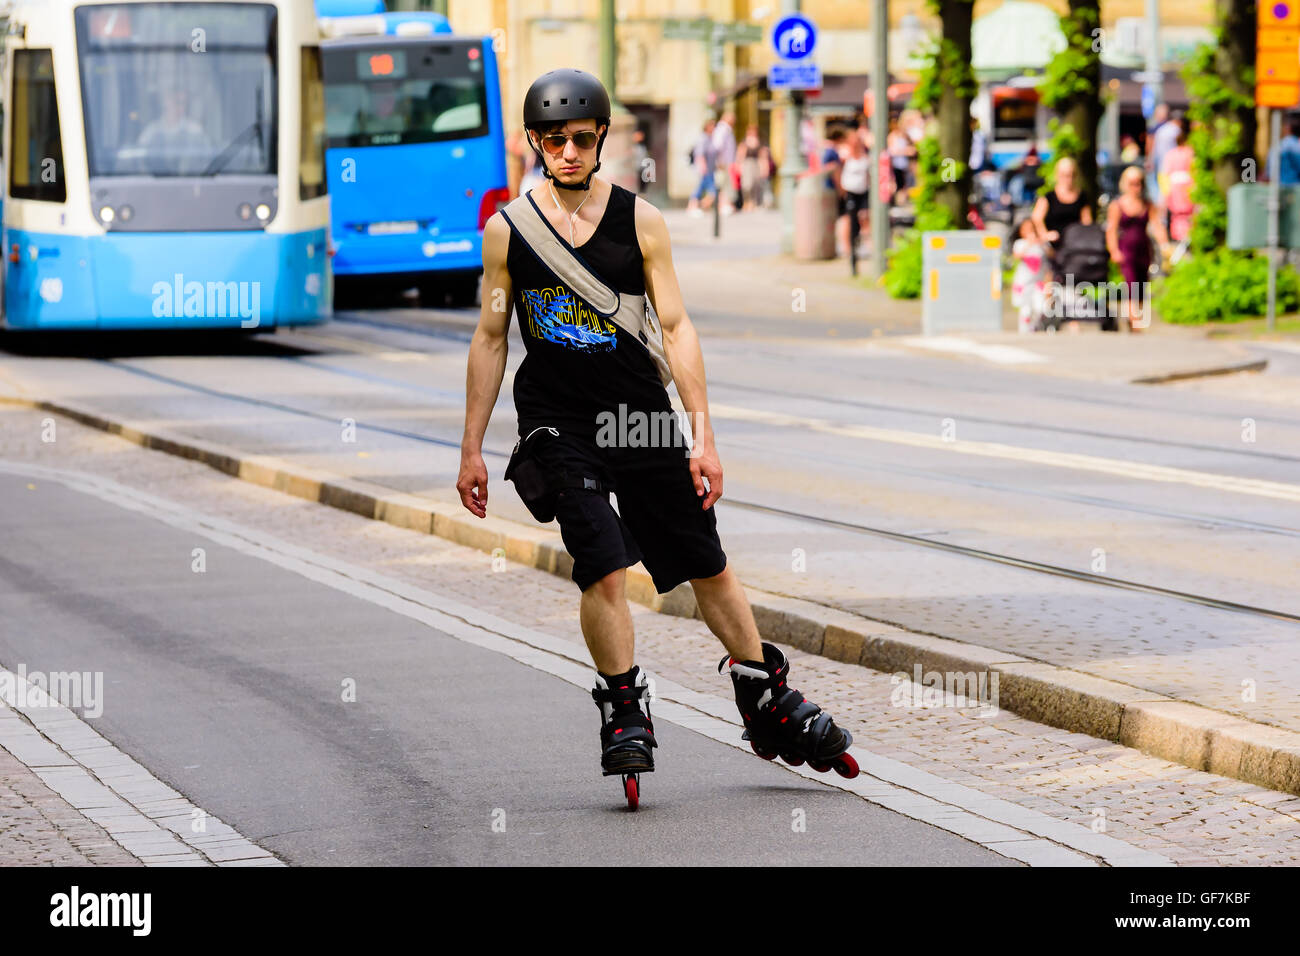 Göteborg, Schweden - 25. Juli 2016: Junge erwachsene Mann Skaten in Richtung Sie mit Straßenbahnen im Hintergrund. Echte Menschen in everyd Stockfoto